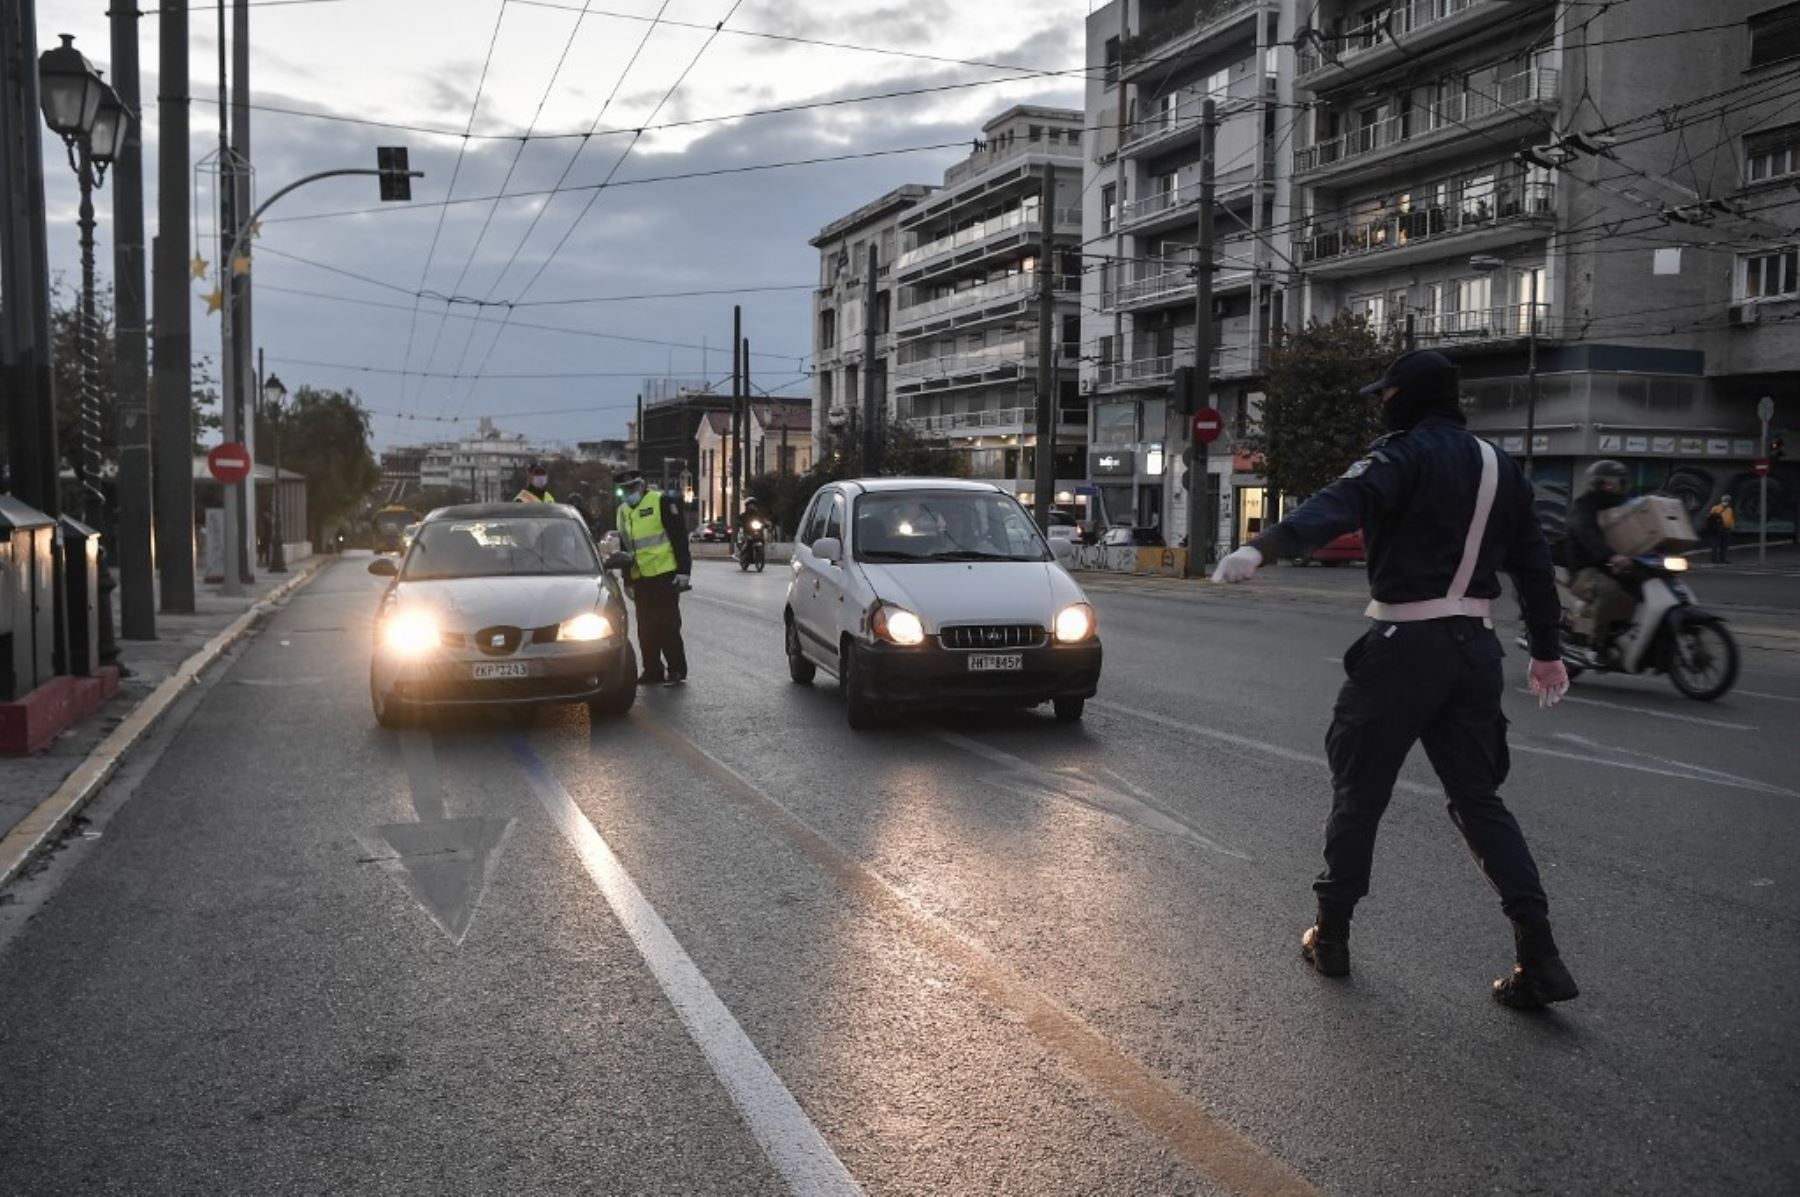 La policía detiene a los conductores en el puesto de control en el centro de Atenas para verificar las autorizaciones de circulación de las personas. Foto: AFP